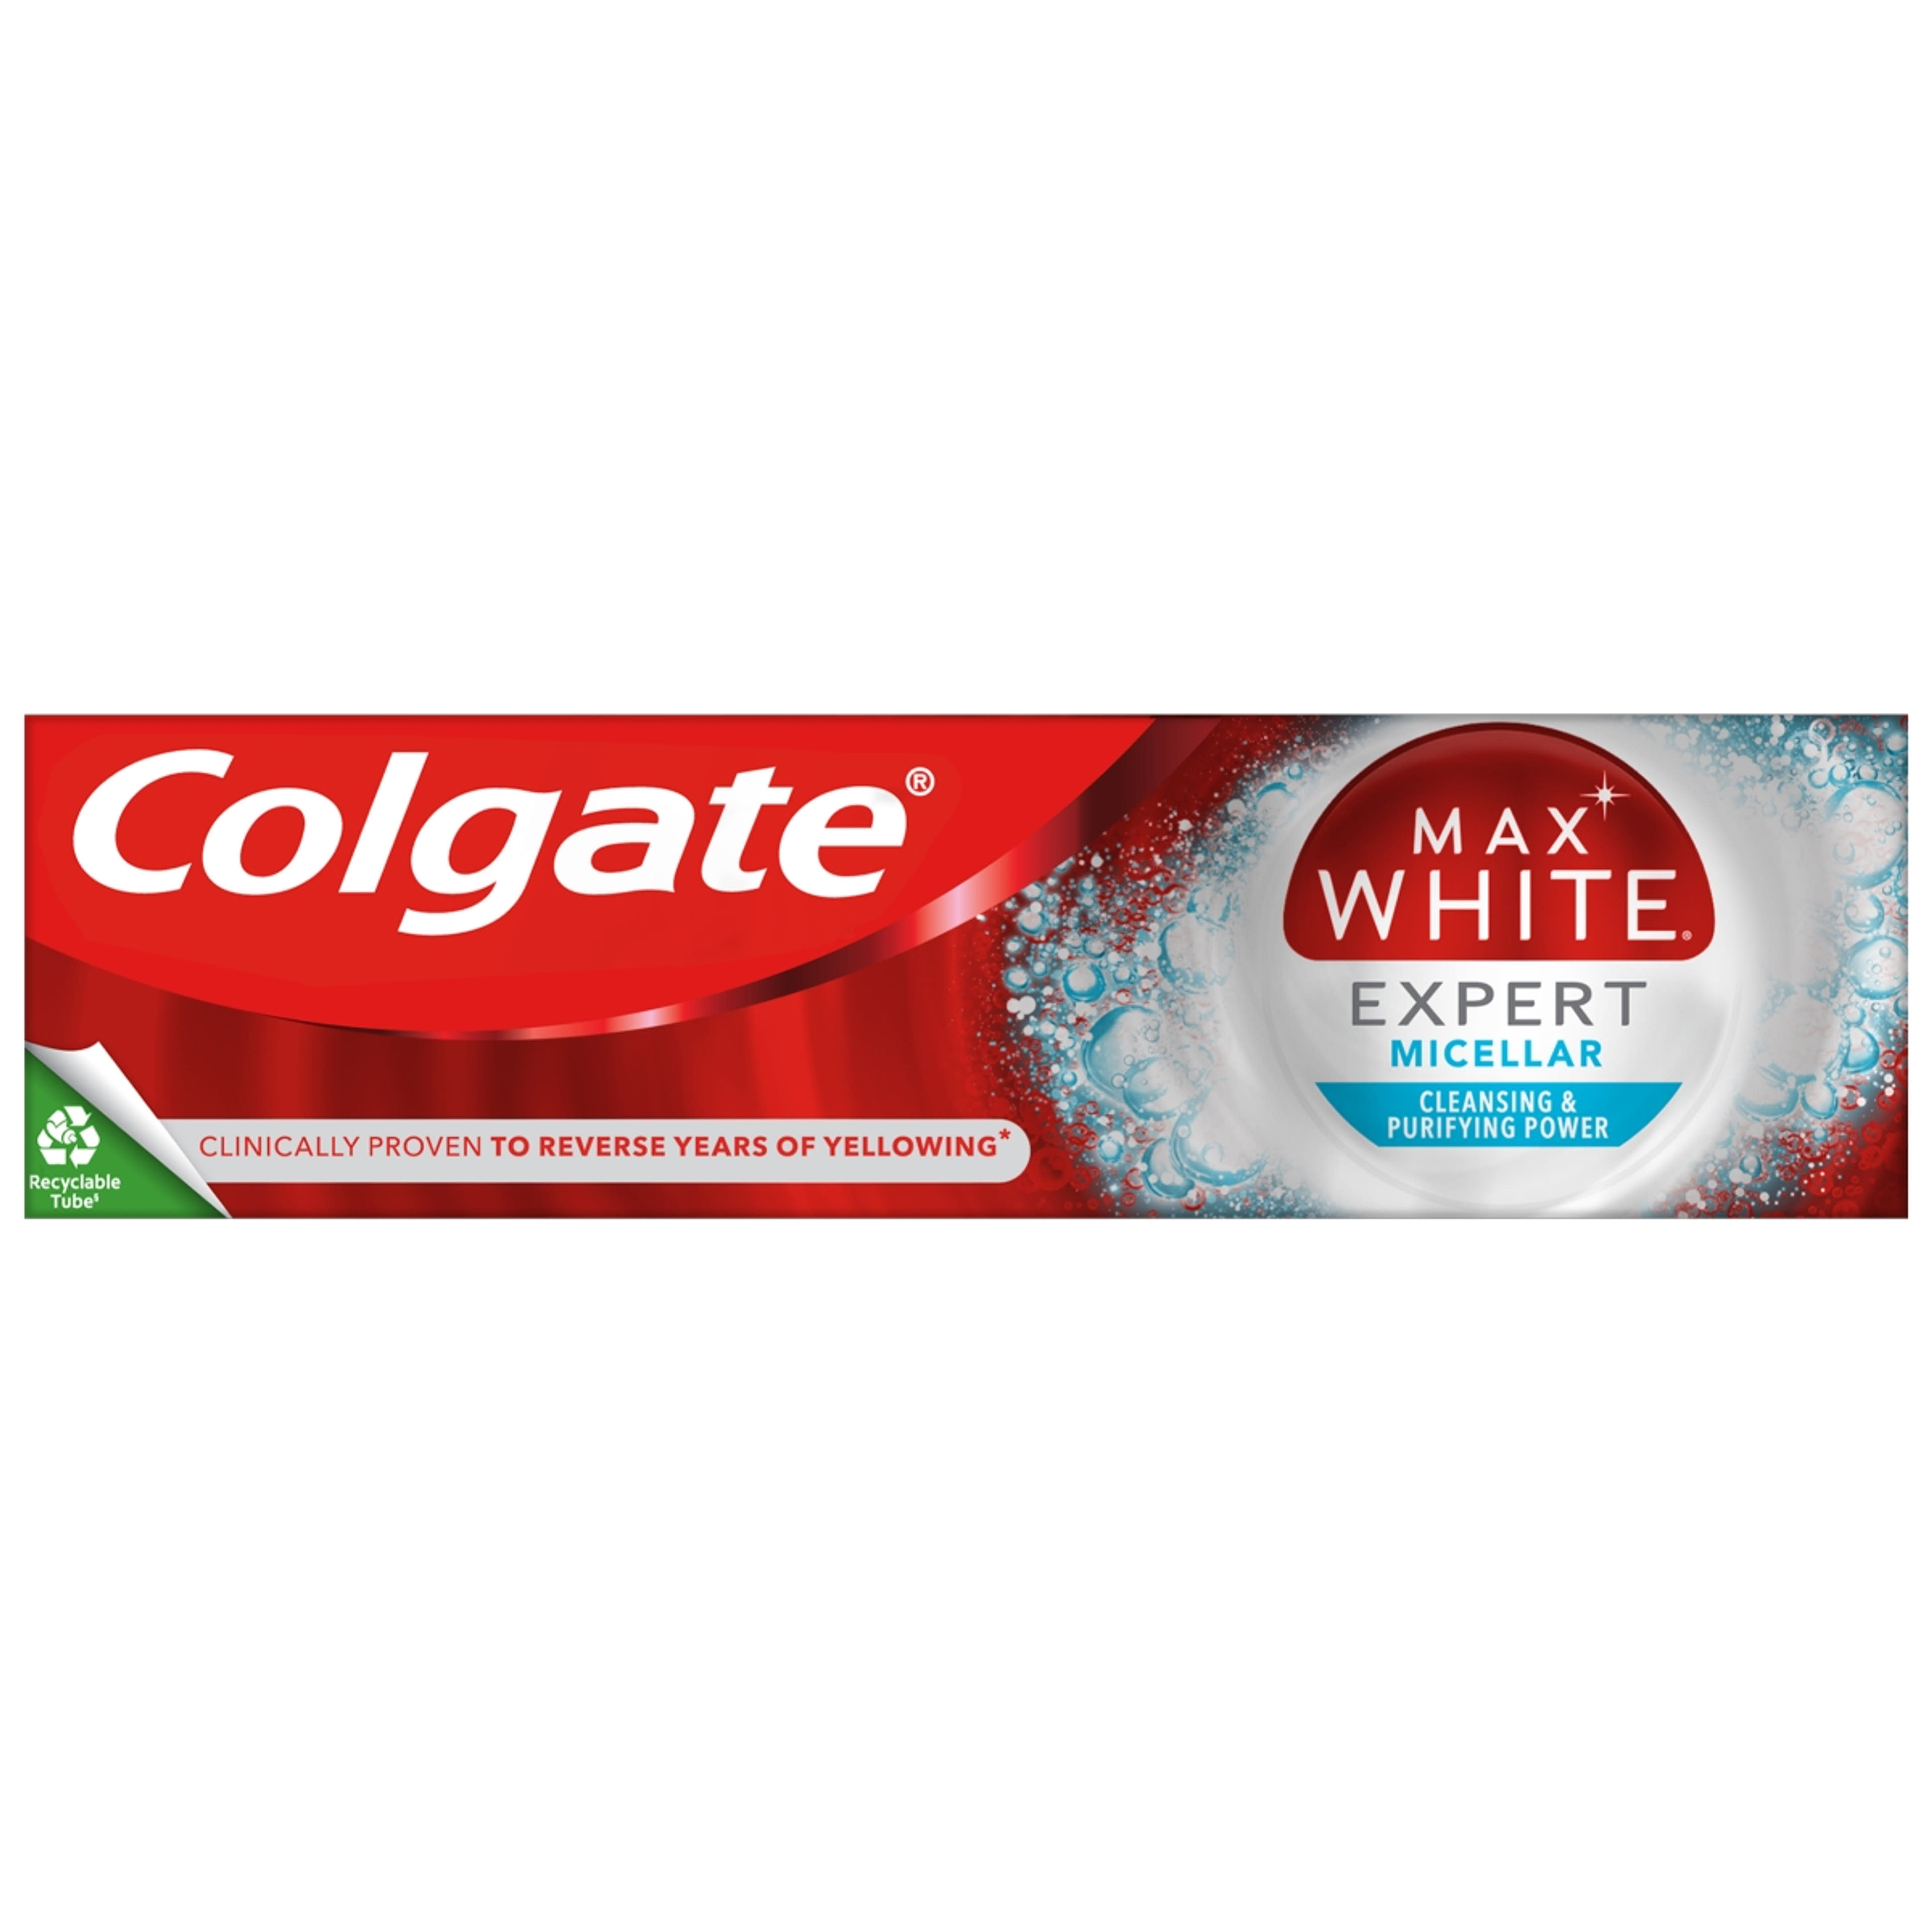 Colgate Max White Expert Micellar fogkrém - 75 ml